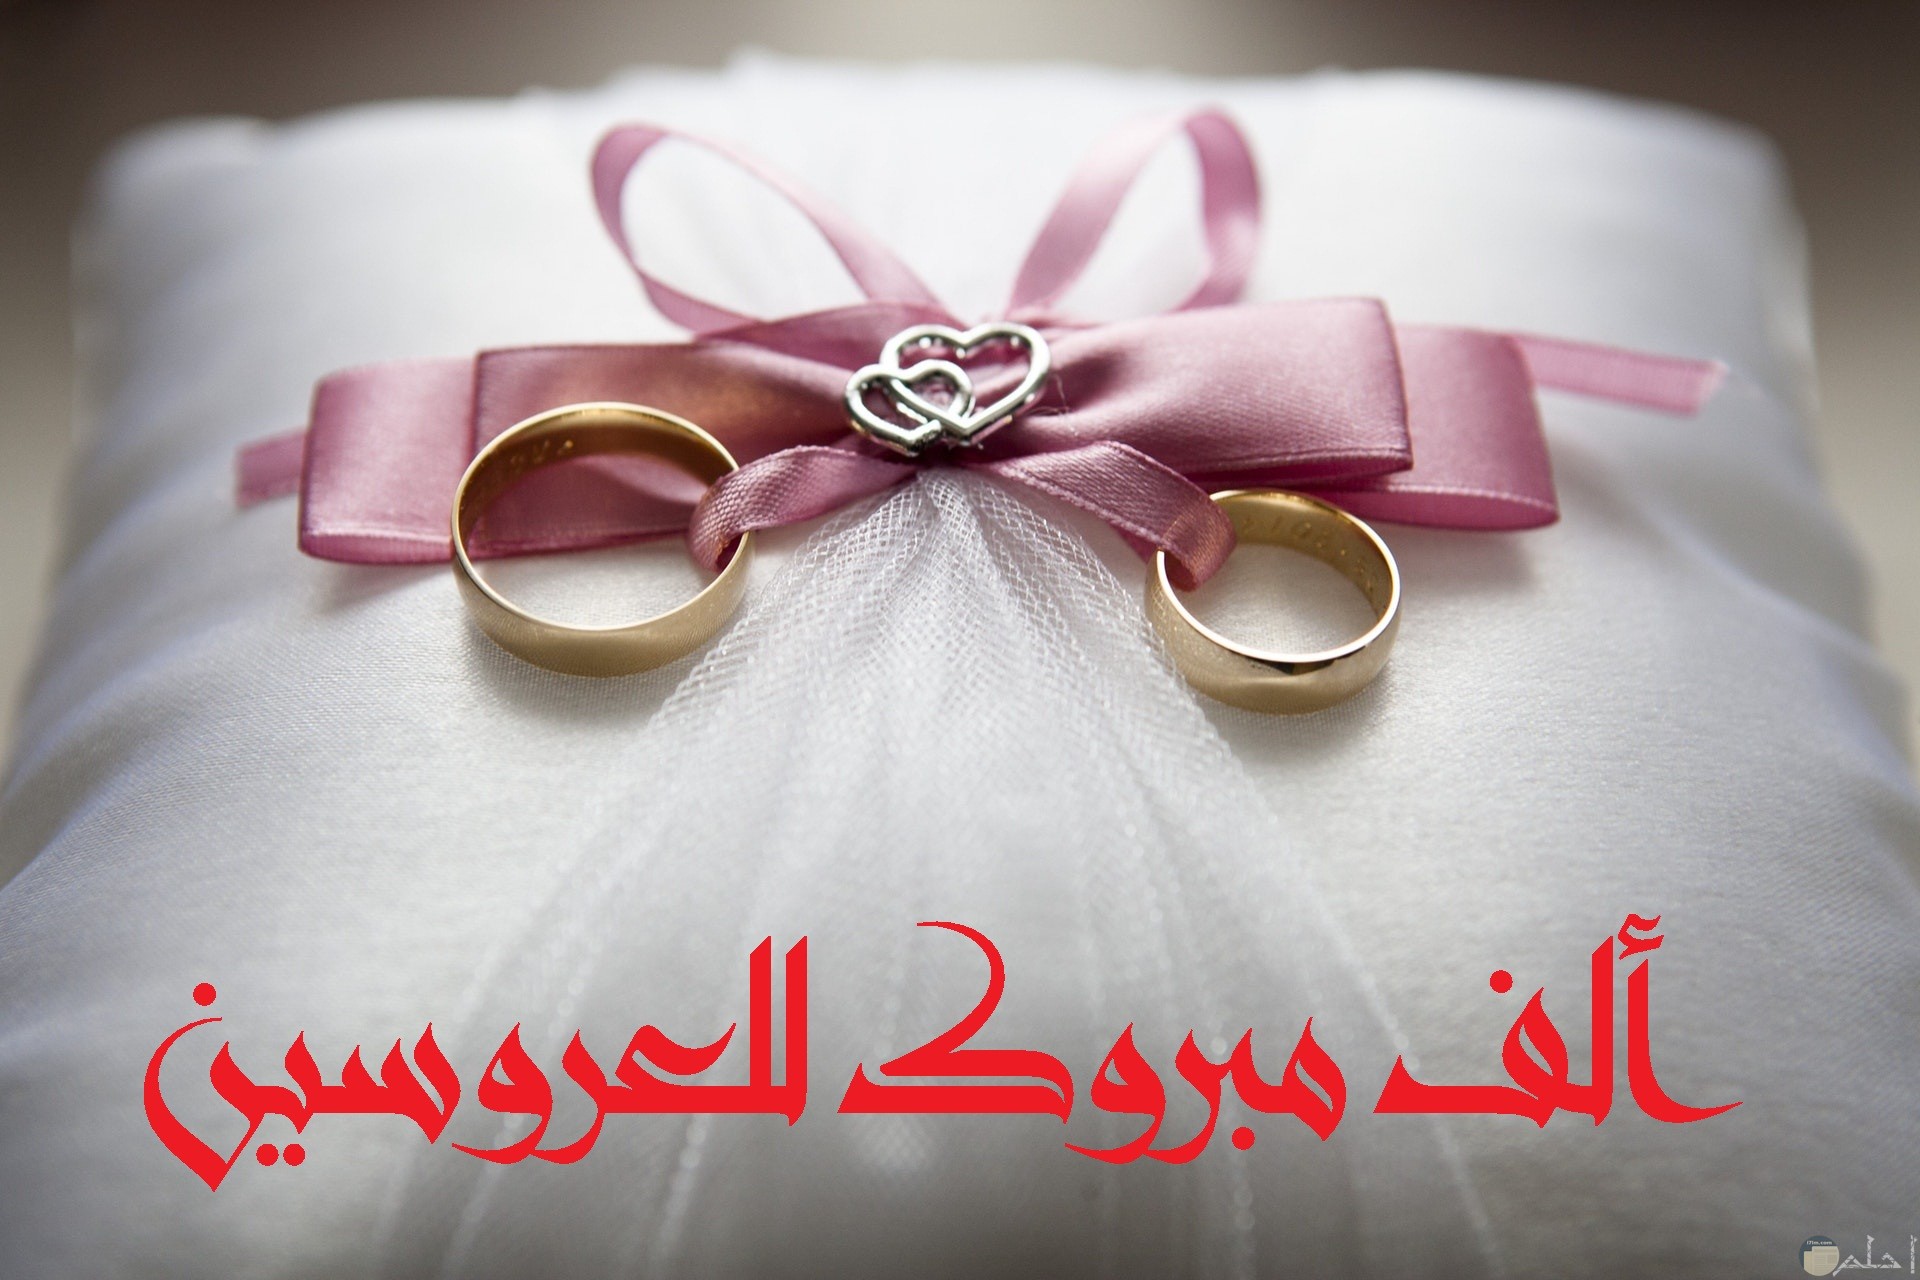 صورة تهنئة جميلة جدا بمناسبة الزواج مكتوب عليها ألف مبروك للعروسين بخط مميز مع خاتمين